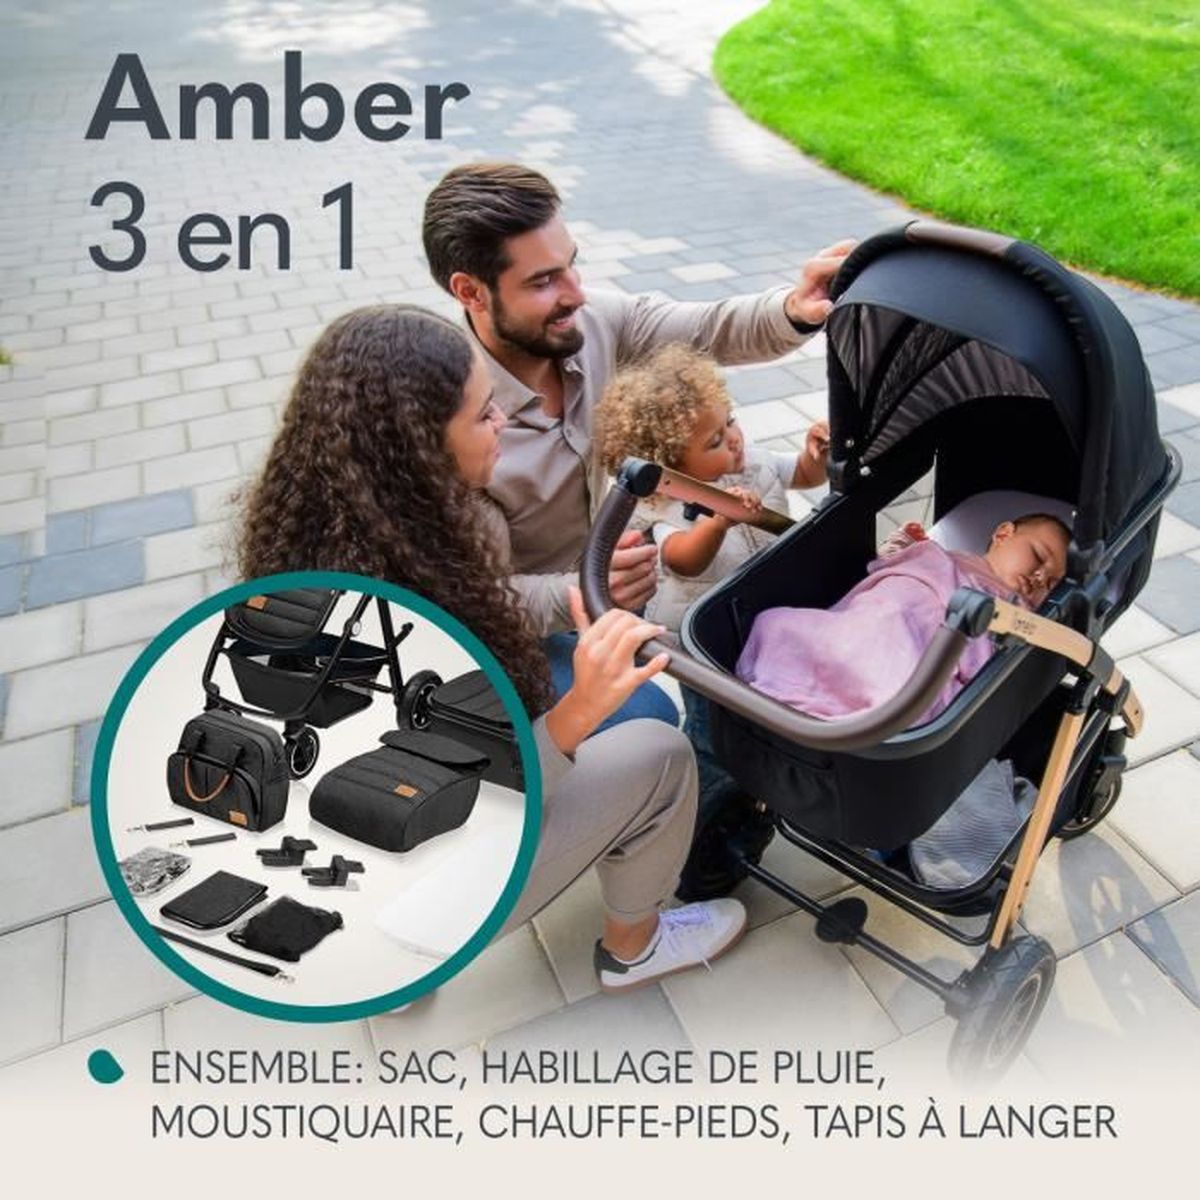 Nacelle BEBE CONFORT Amber, Groupe 0, Utilisable en voiture, Confortable,  Sécuritaire, 0-6 mois (environ 10kg), Graphite